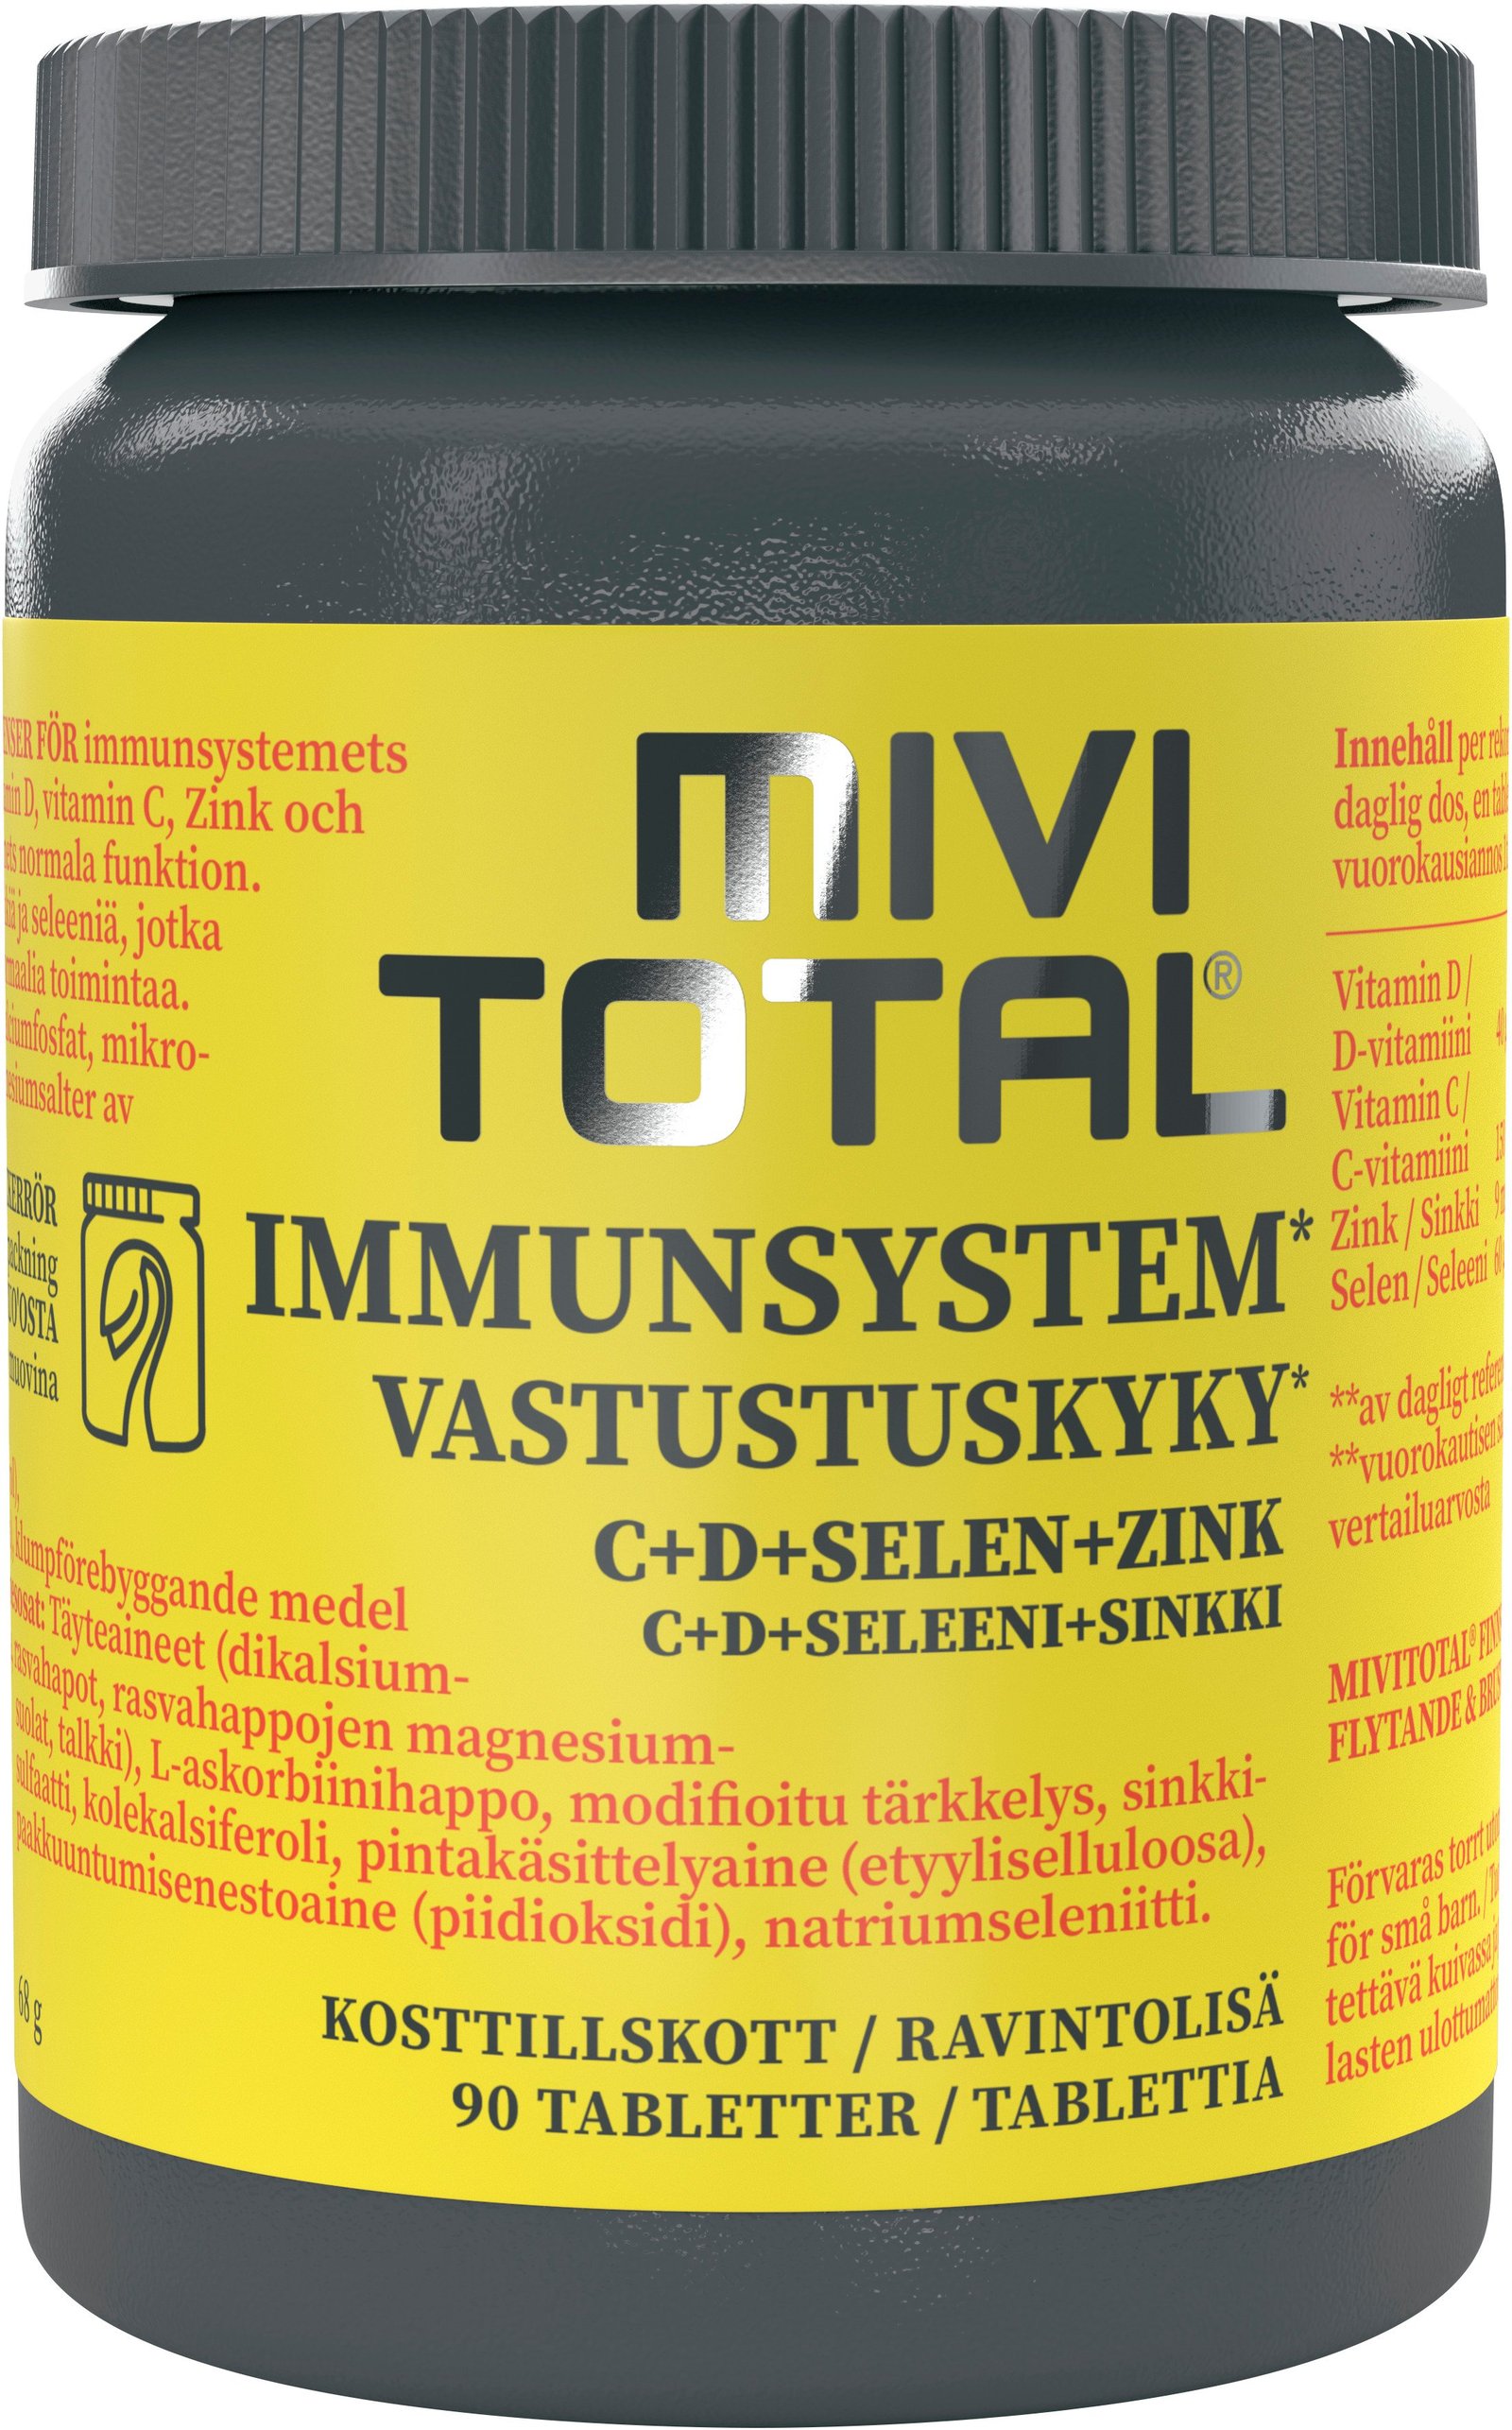 Mivitotal Immunsystem 90 tabletter